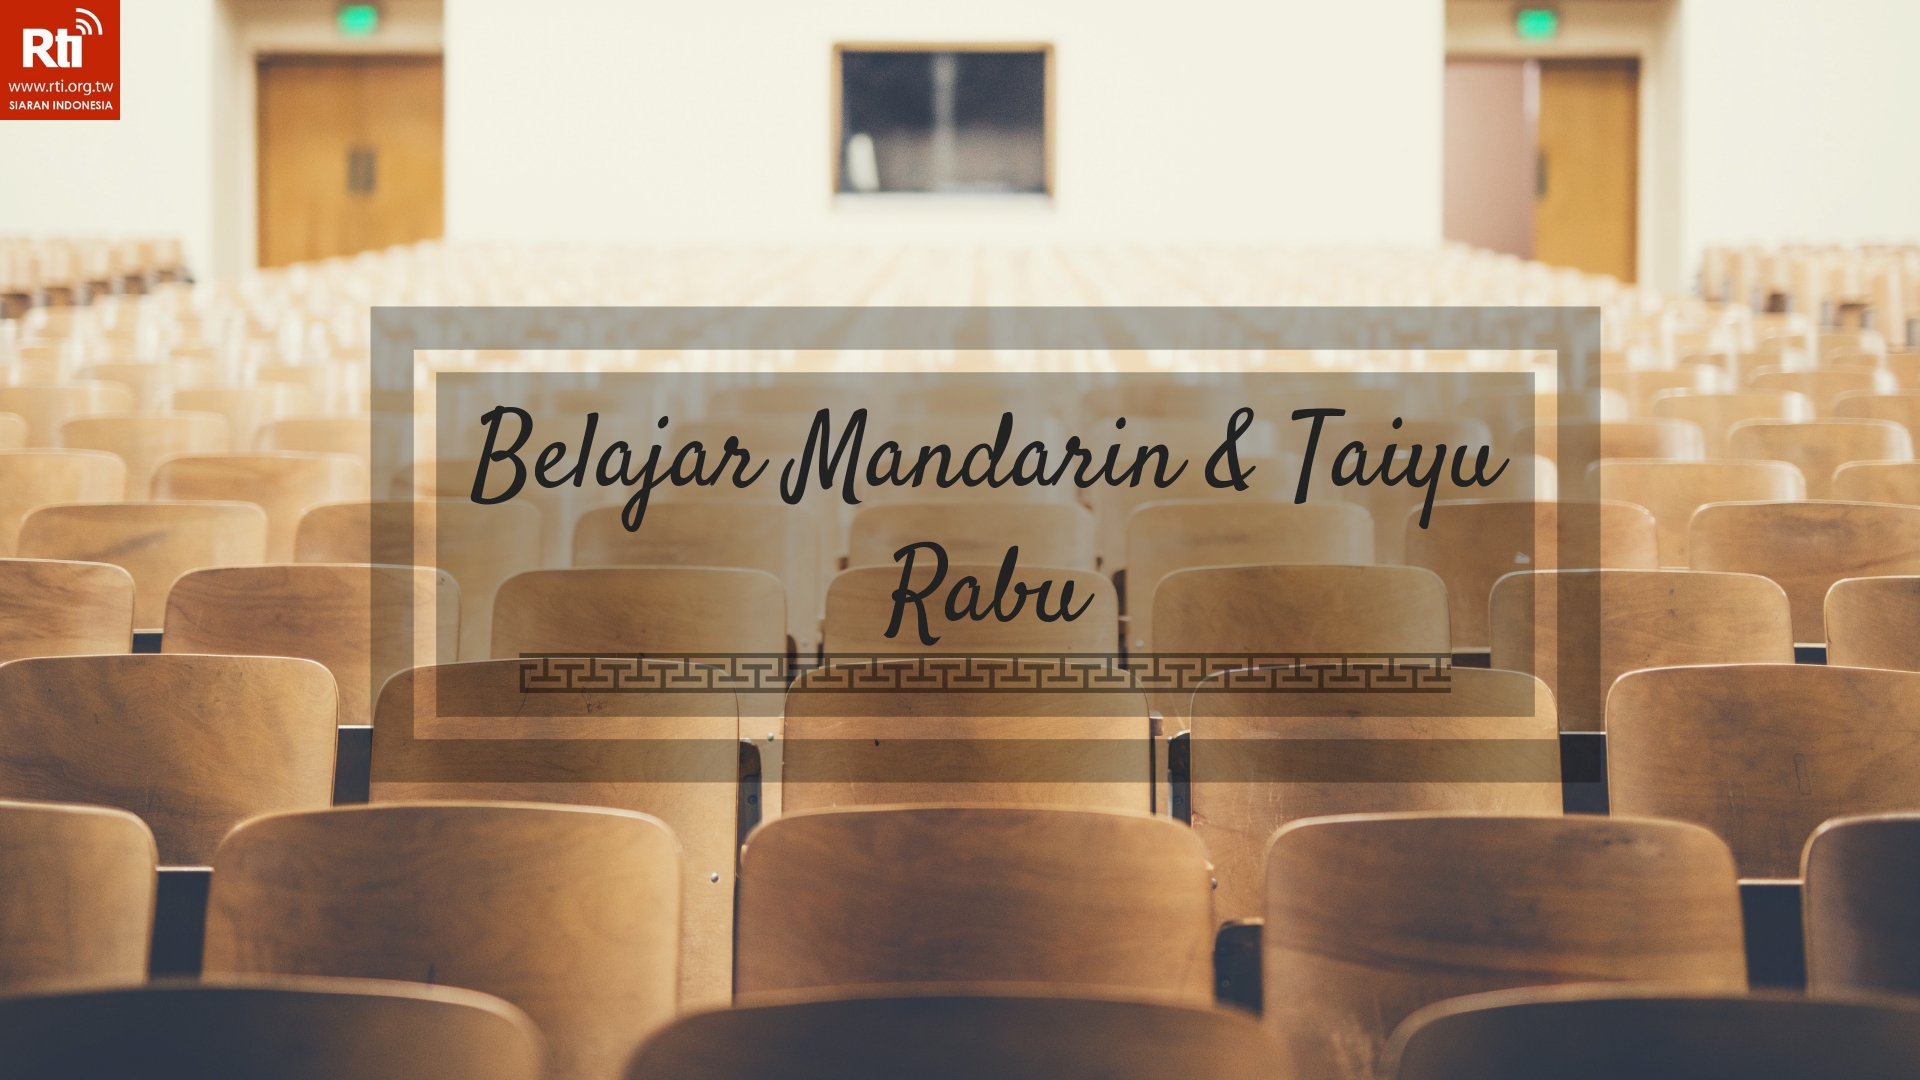 Belajar Mandarin taiyu dan Bahasa Indonesia 乘涼berteduh